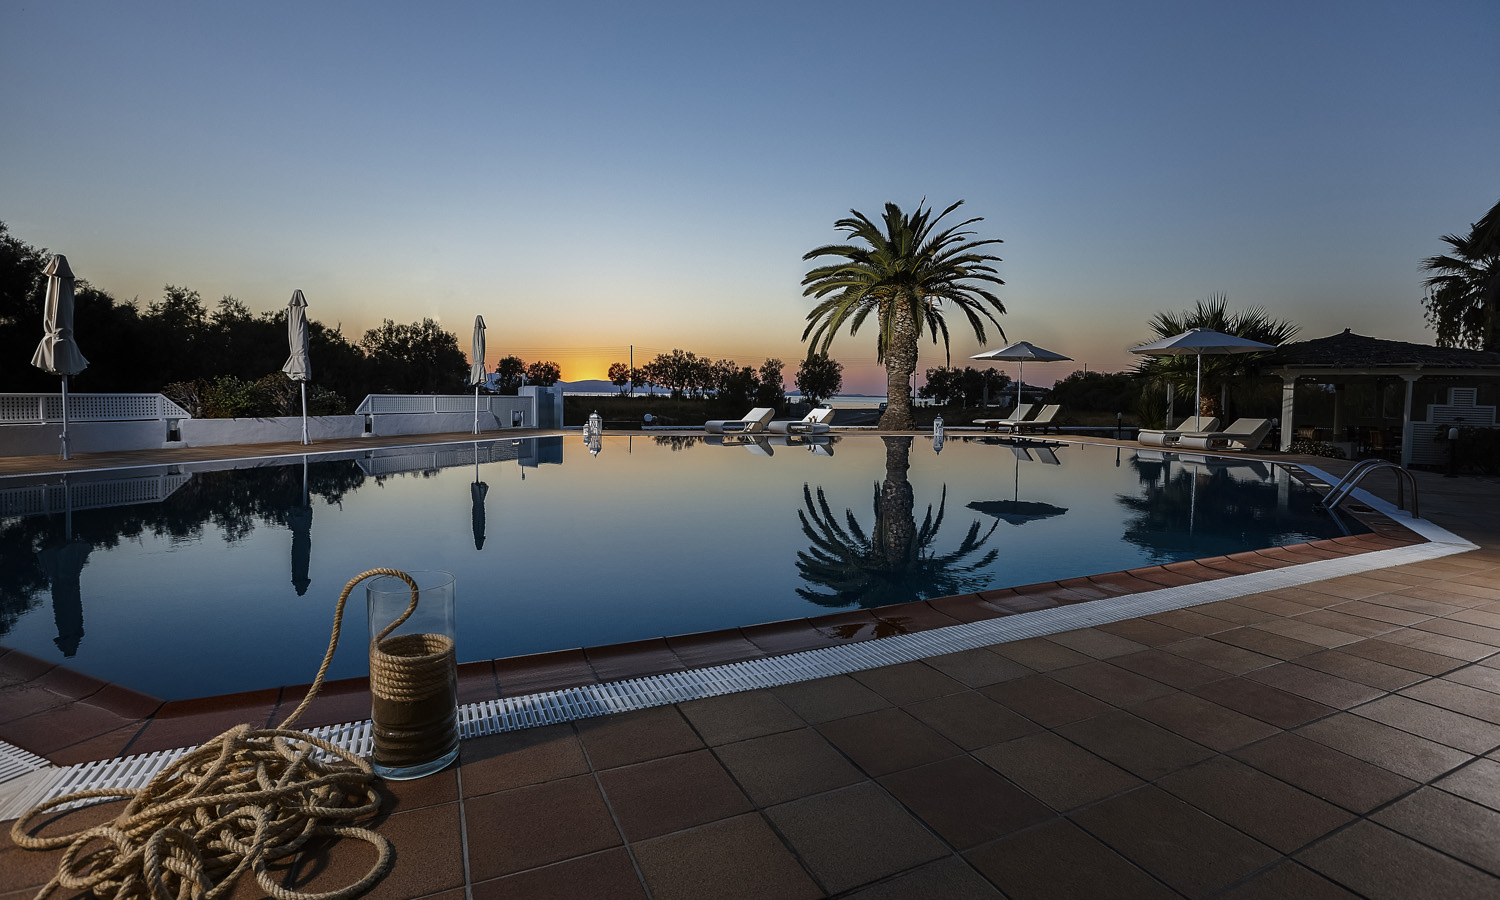 Galaxy Hotel Naxos Travelling Greece